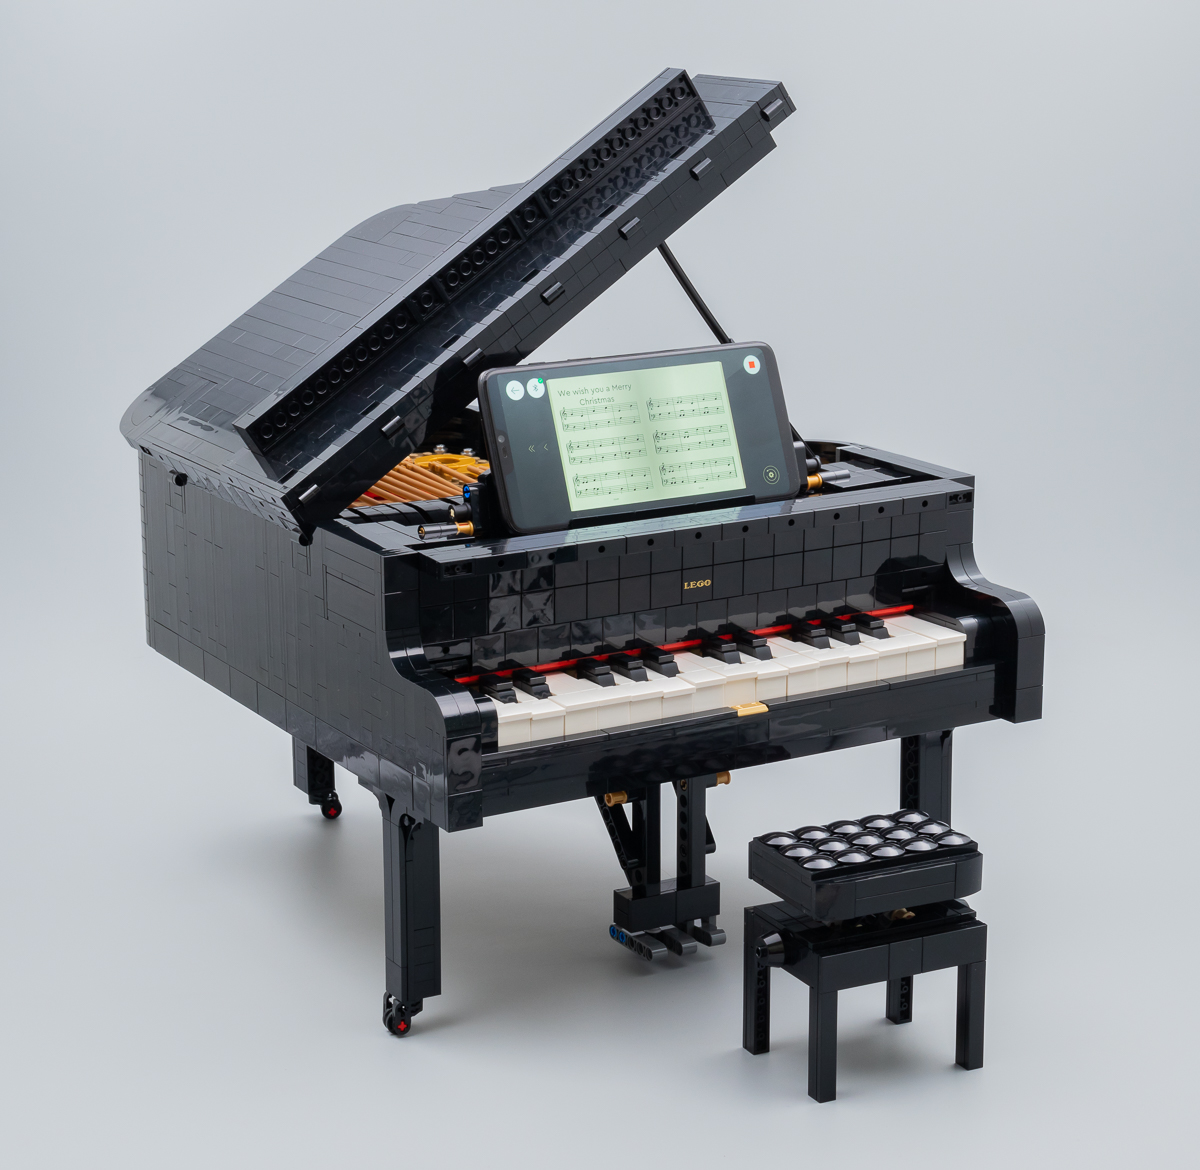 ▻ Review : LEGO Ideas 21323 Grand Piano - HOTH BRICKS